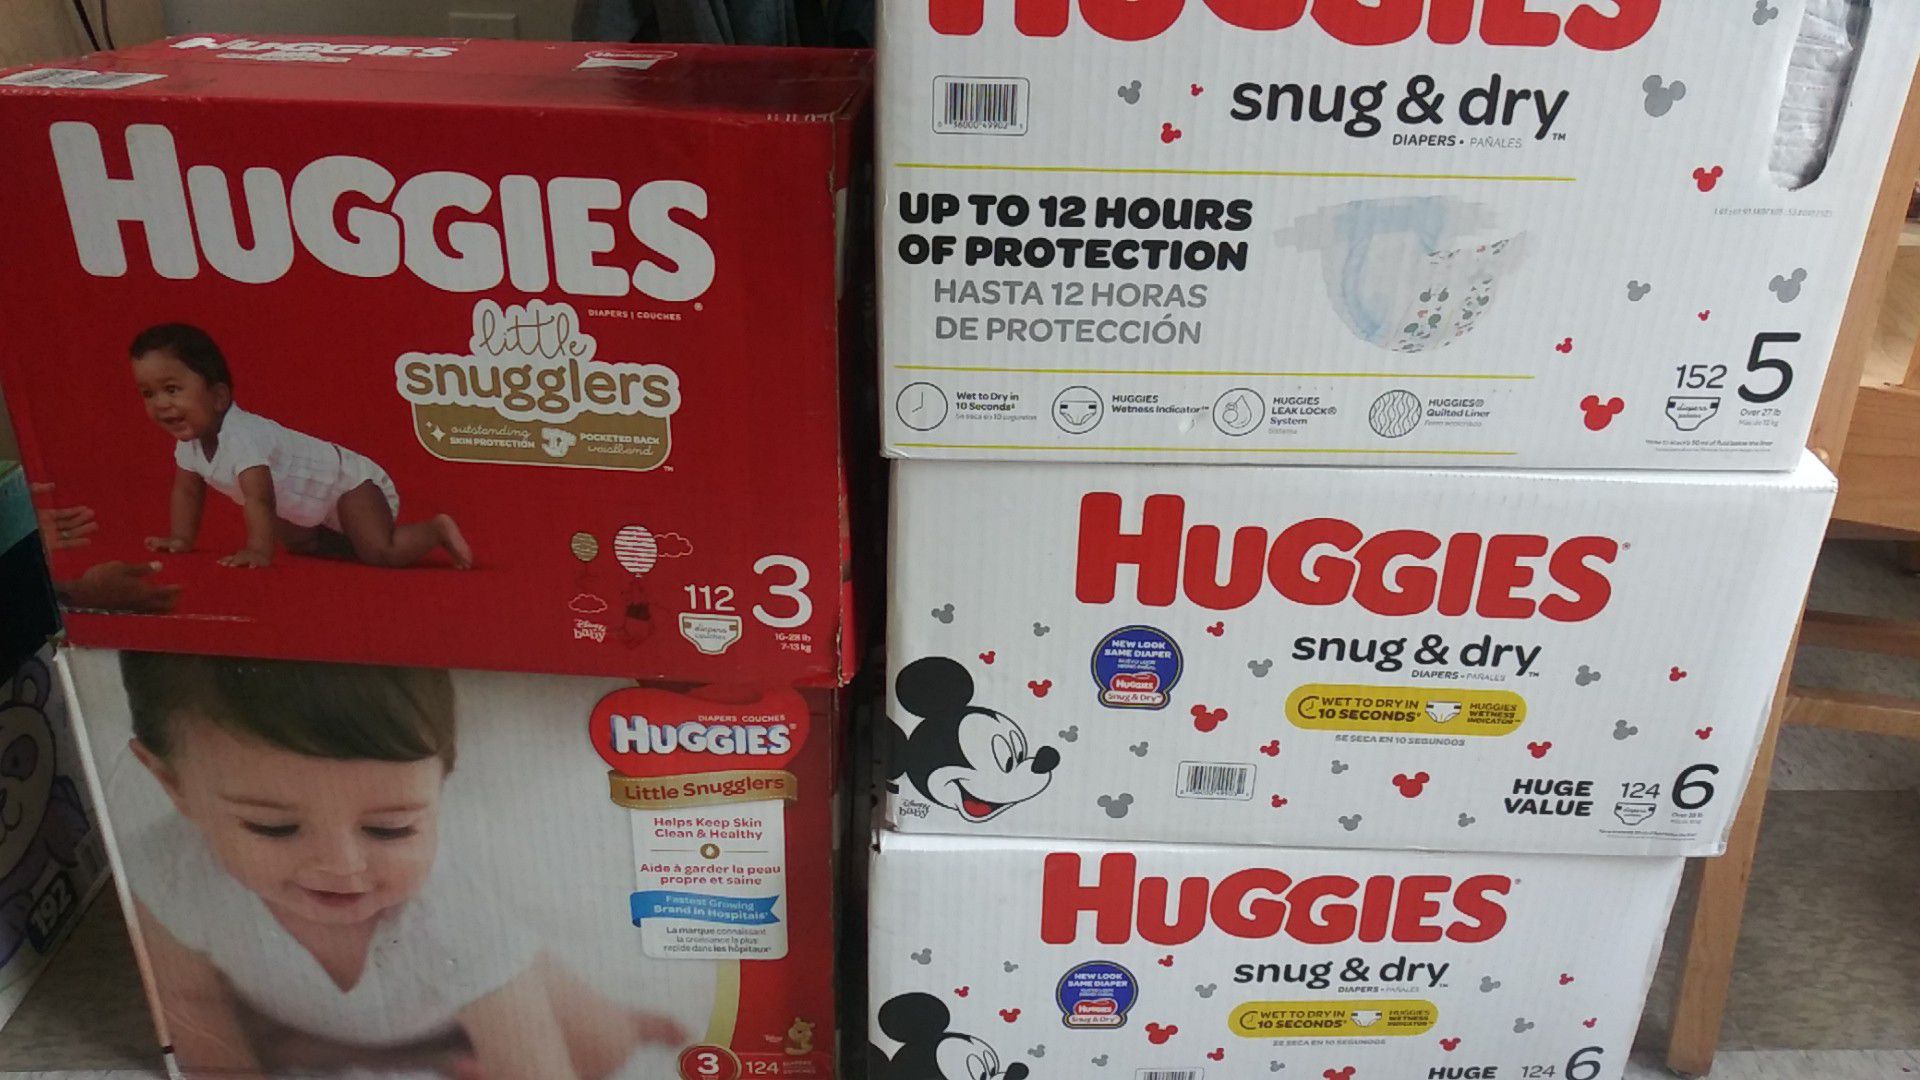 Huggies little Snugglers & HUGGIES snug & dry